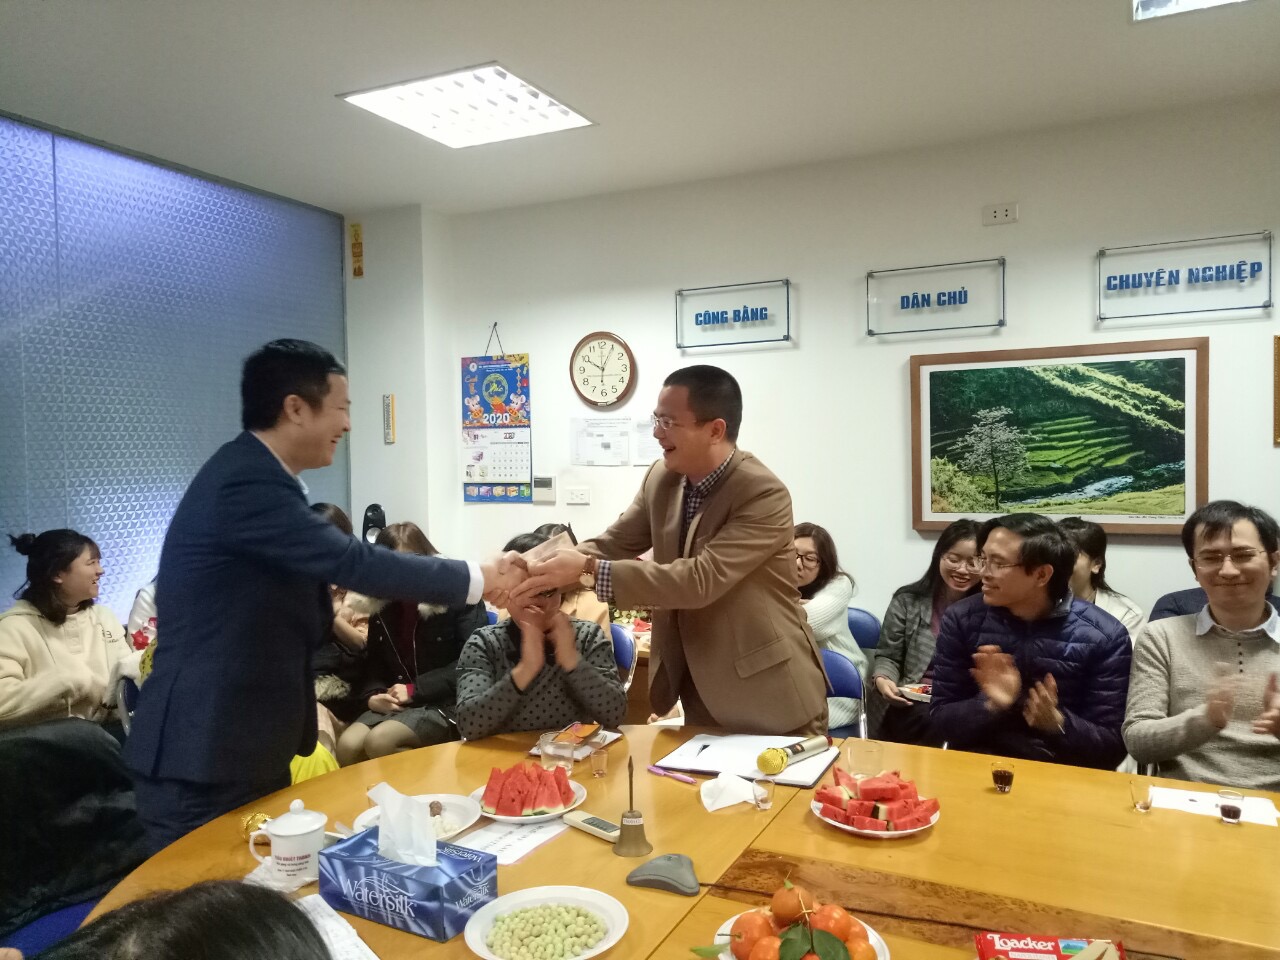 Giám đốc Bán hàng miền Bắc Bế Mạnh Hà thay mặt anh Đồng Xuân Hùng nhận phần quà của Tổng giám đốc trao cho nhân viên có sáng kiến khai xuân xuất sắc